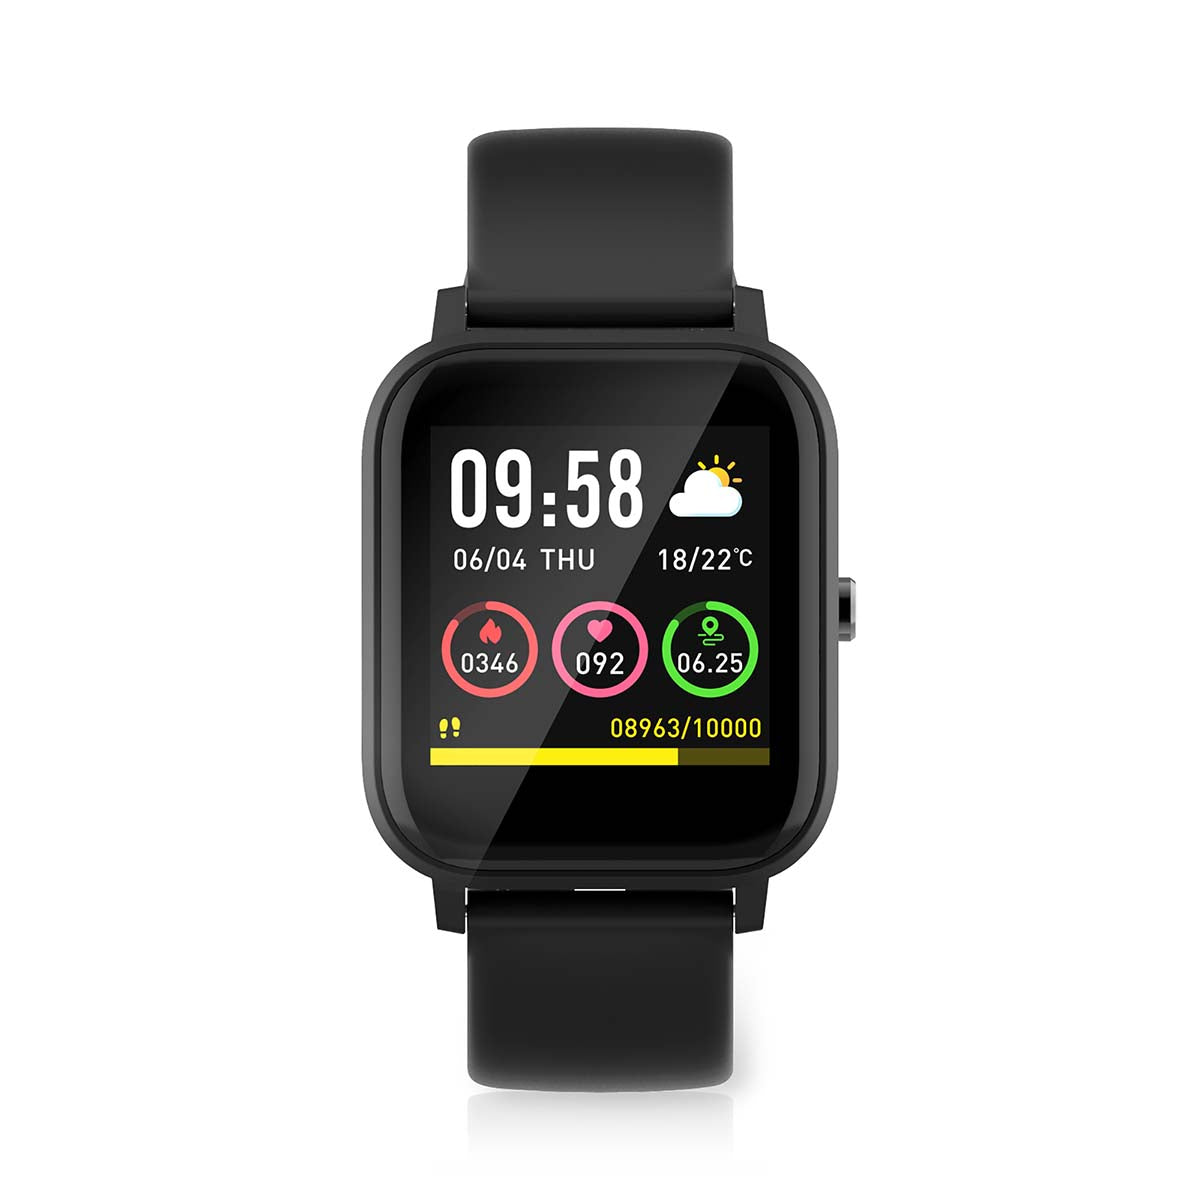 Smartwatch Armbanduhr Uhr LCD IP68 schwrz jetzt kaufen - Aktionskönig